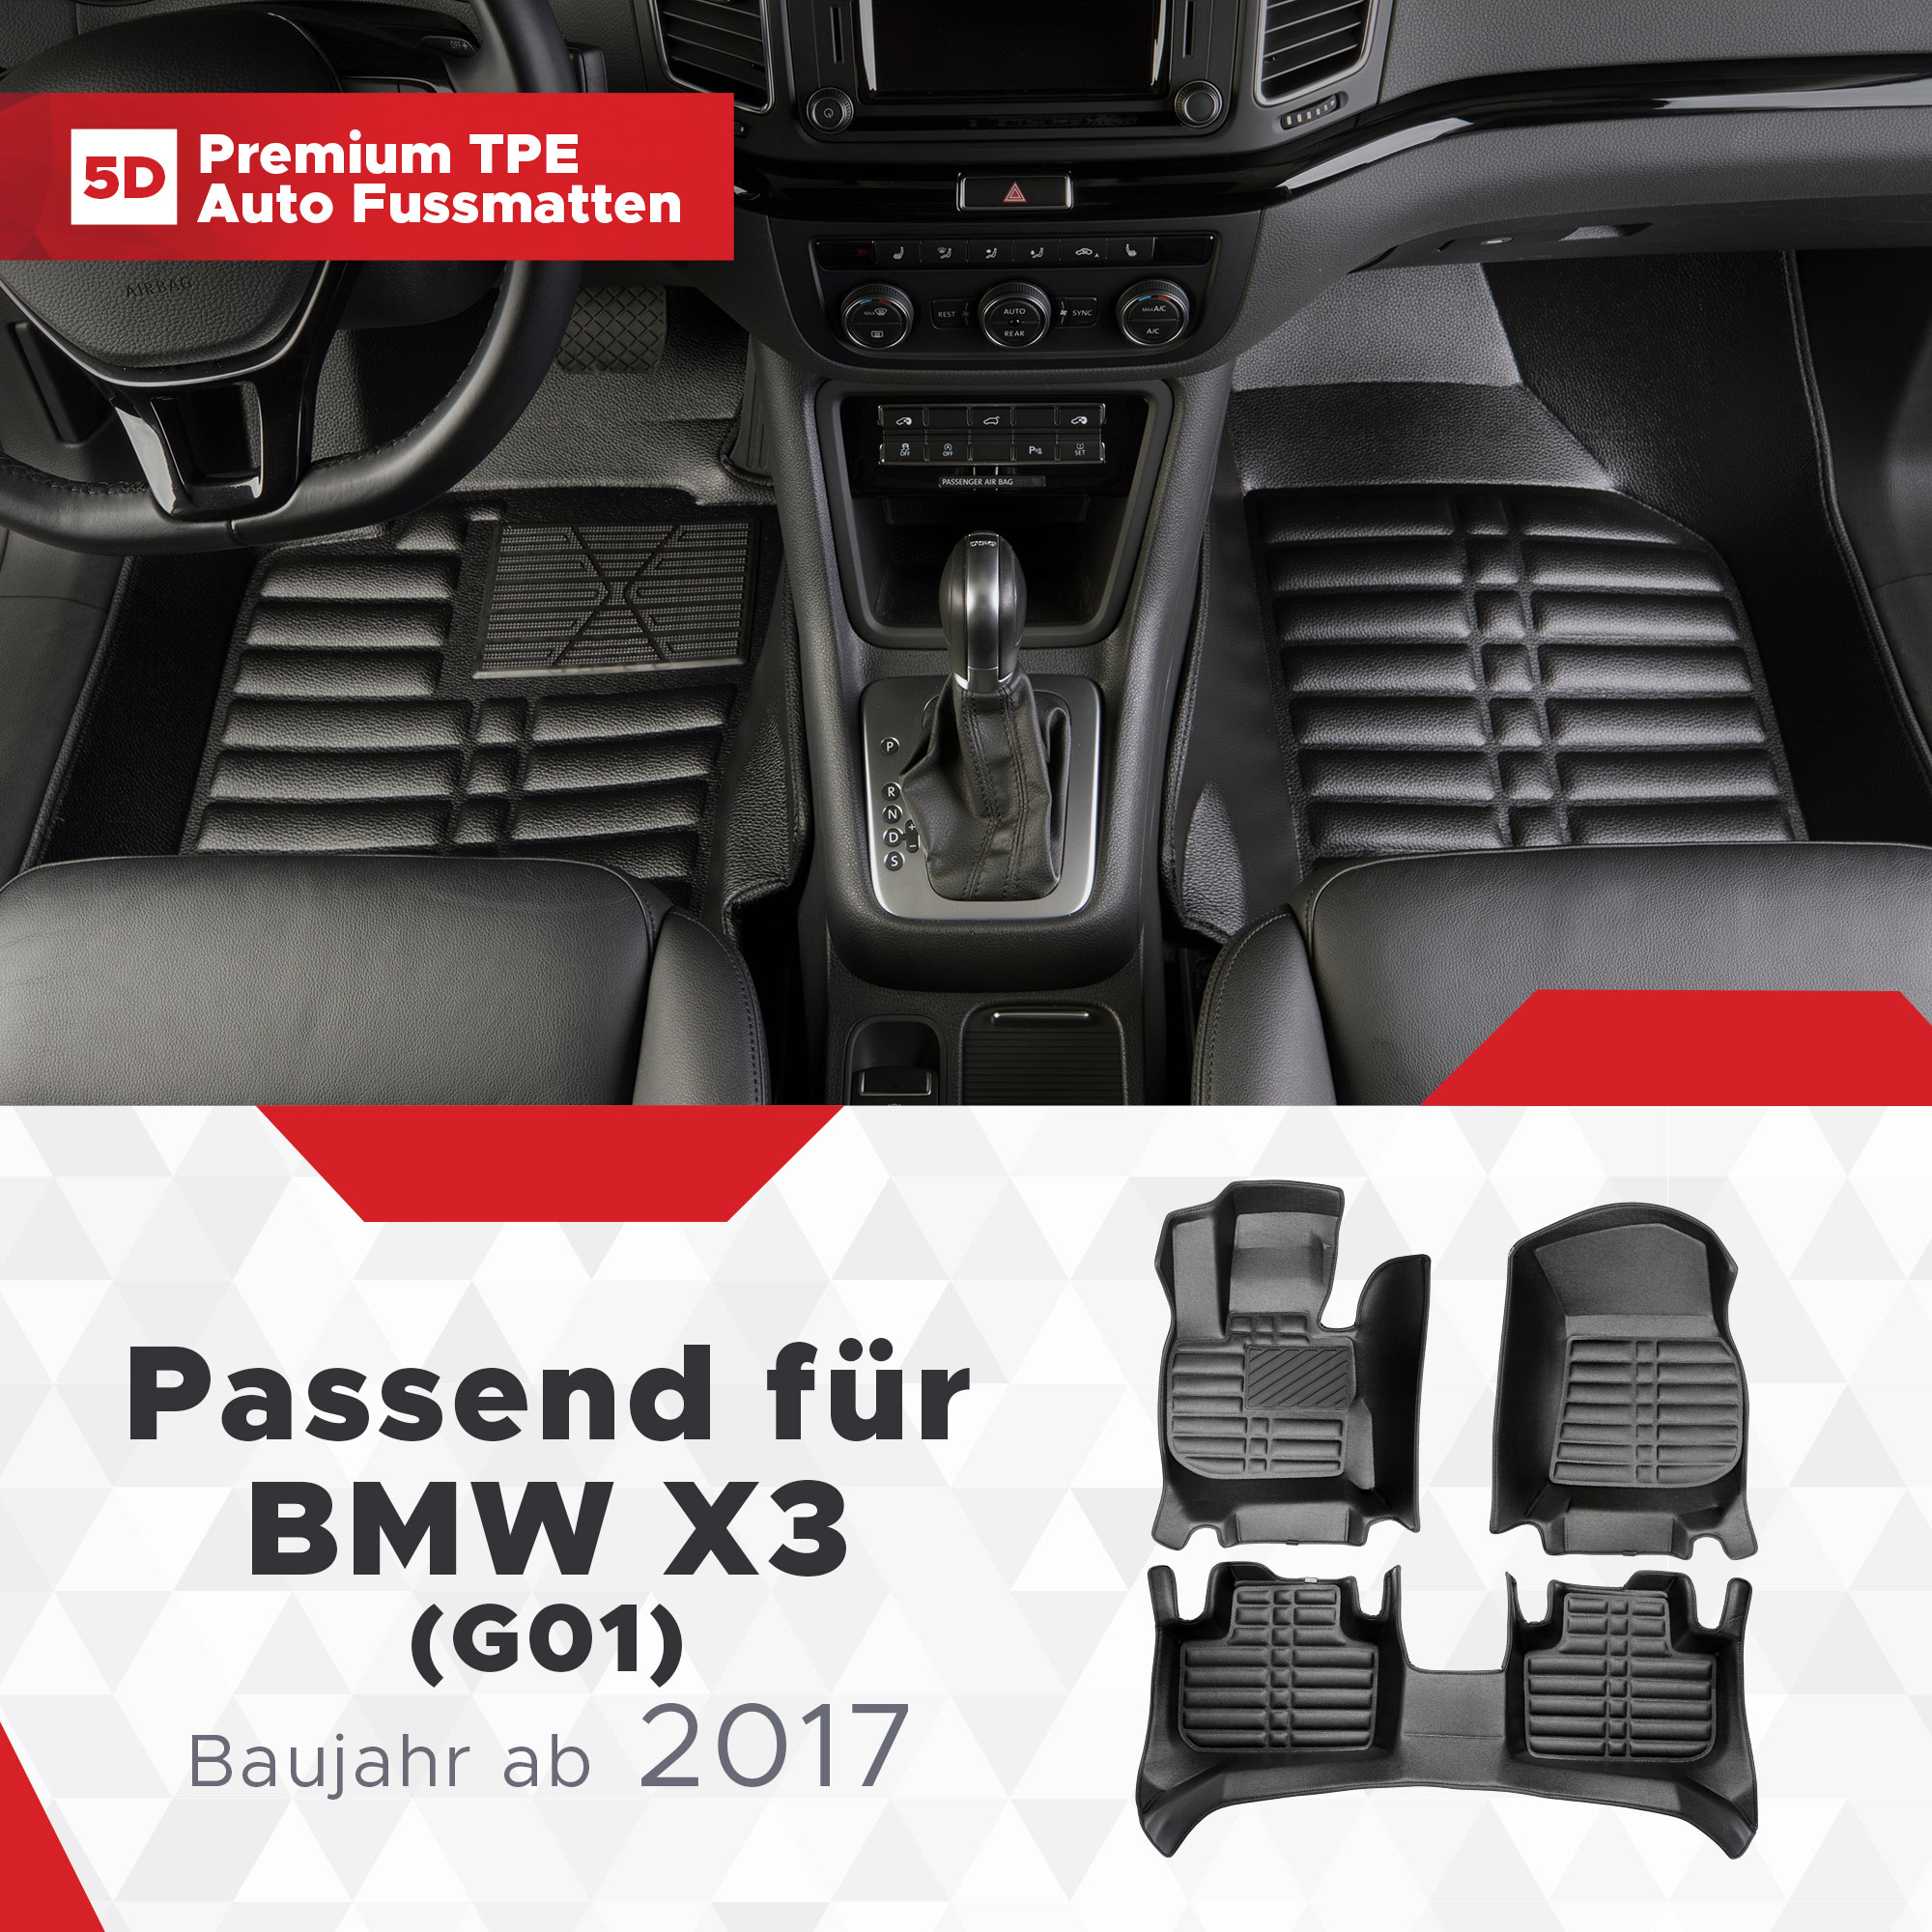 5D BMW X3 (G01) Fussmatten Bj ab 2017 TPE